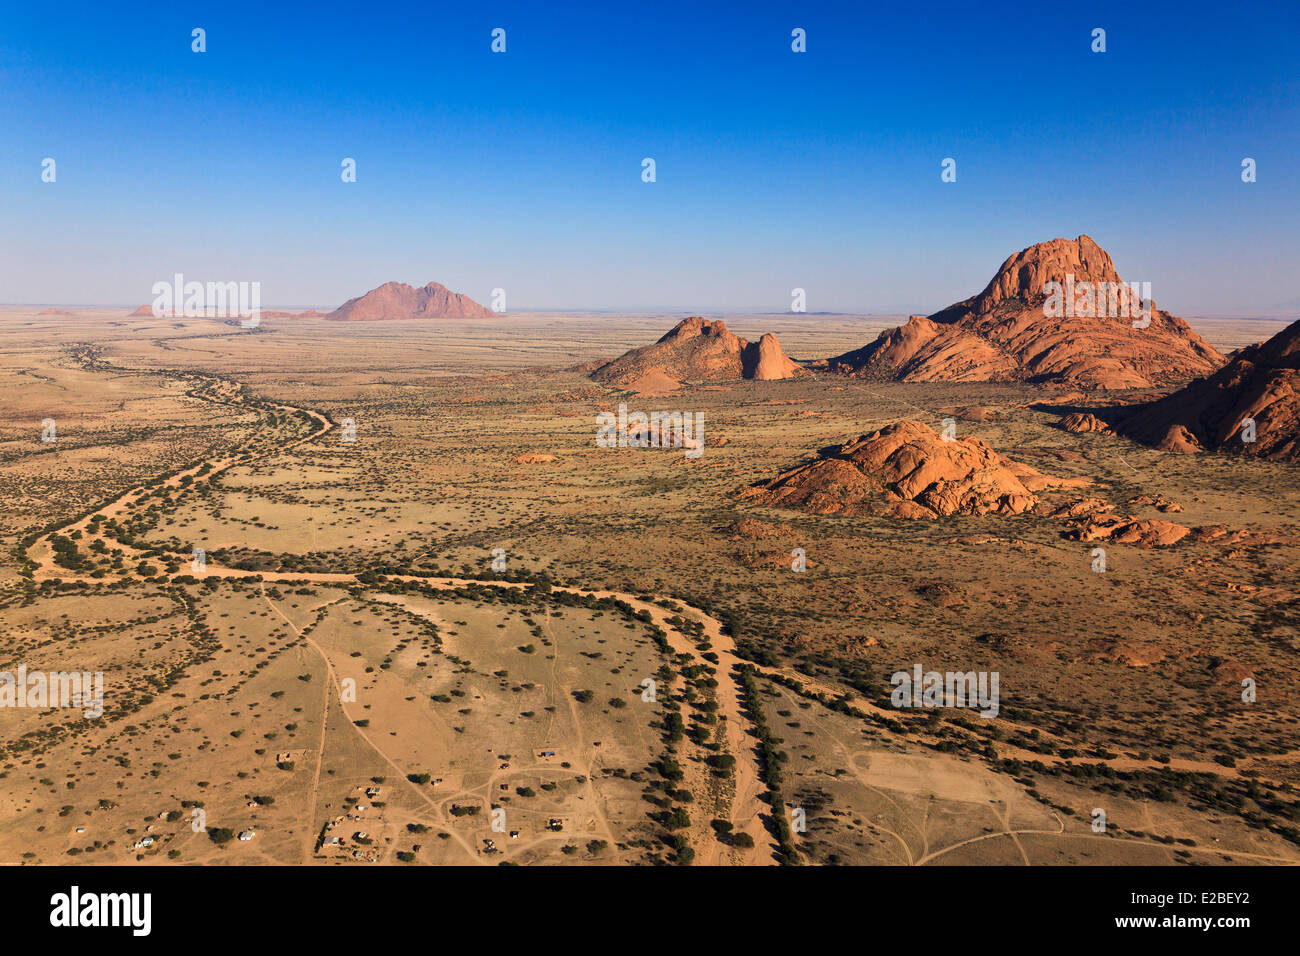 Namibia, Erongo Region, Damaraland, die Spitzkoppe oder Spitzkop (1784 m), Granit Berg in der Namib-Wüste (Luftbild) Stockfoto